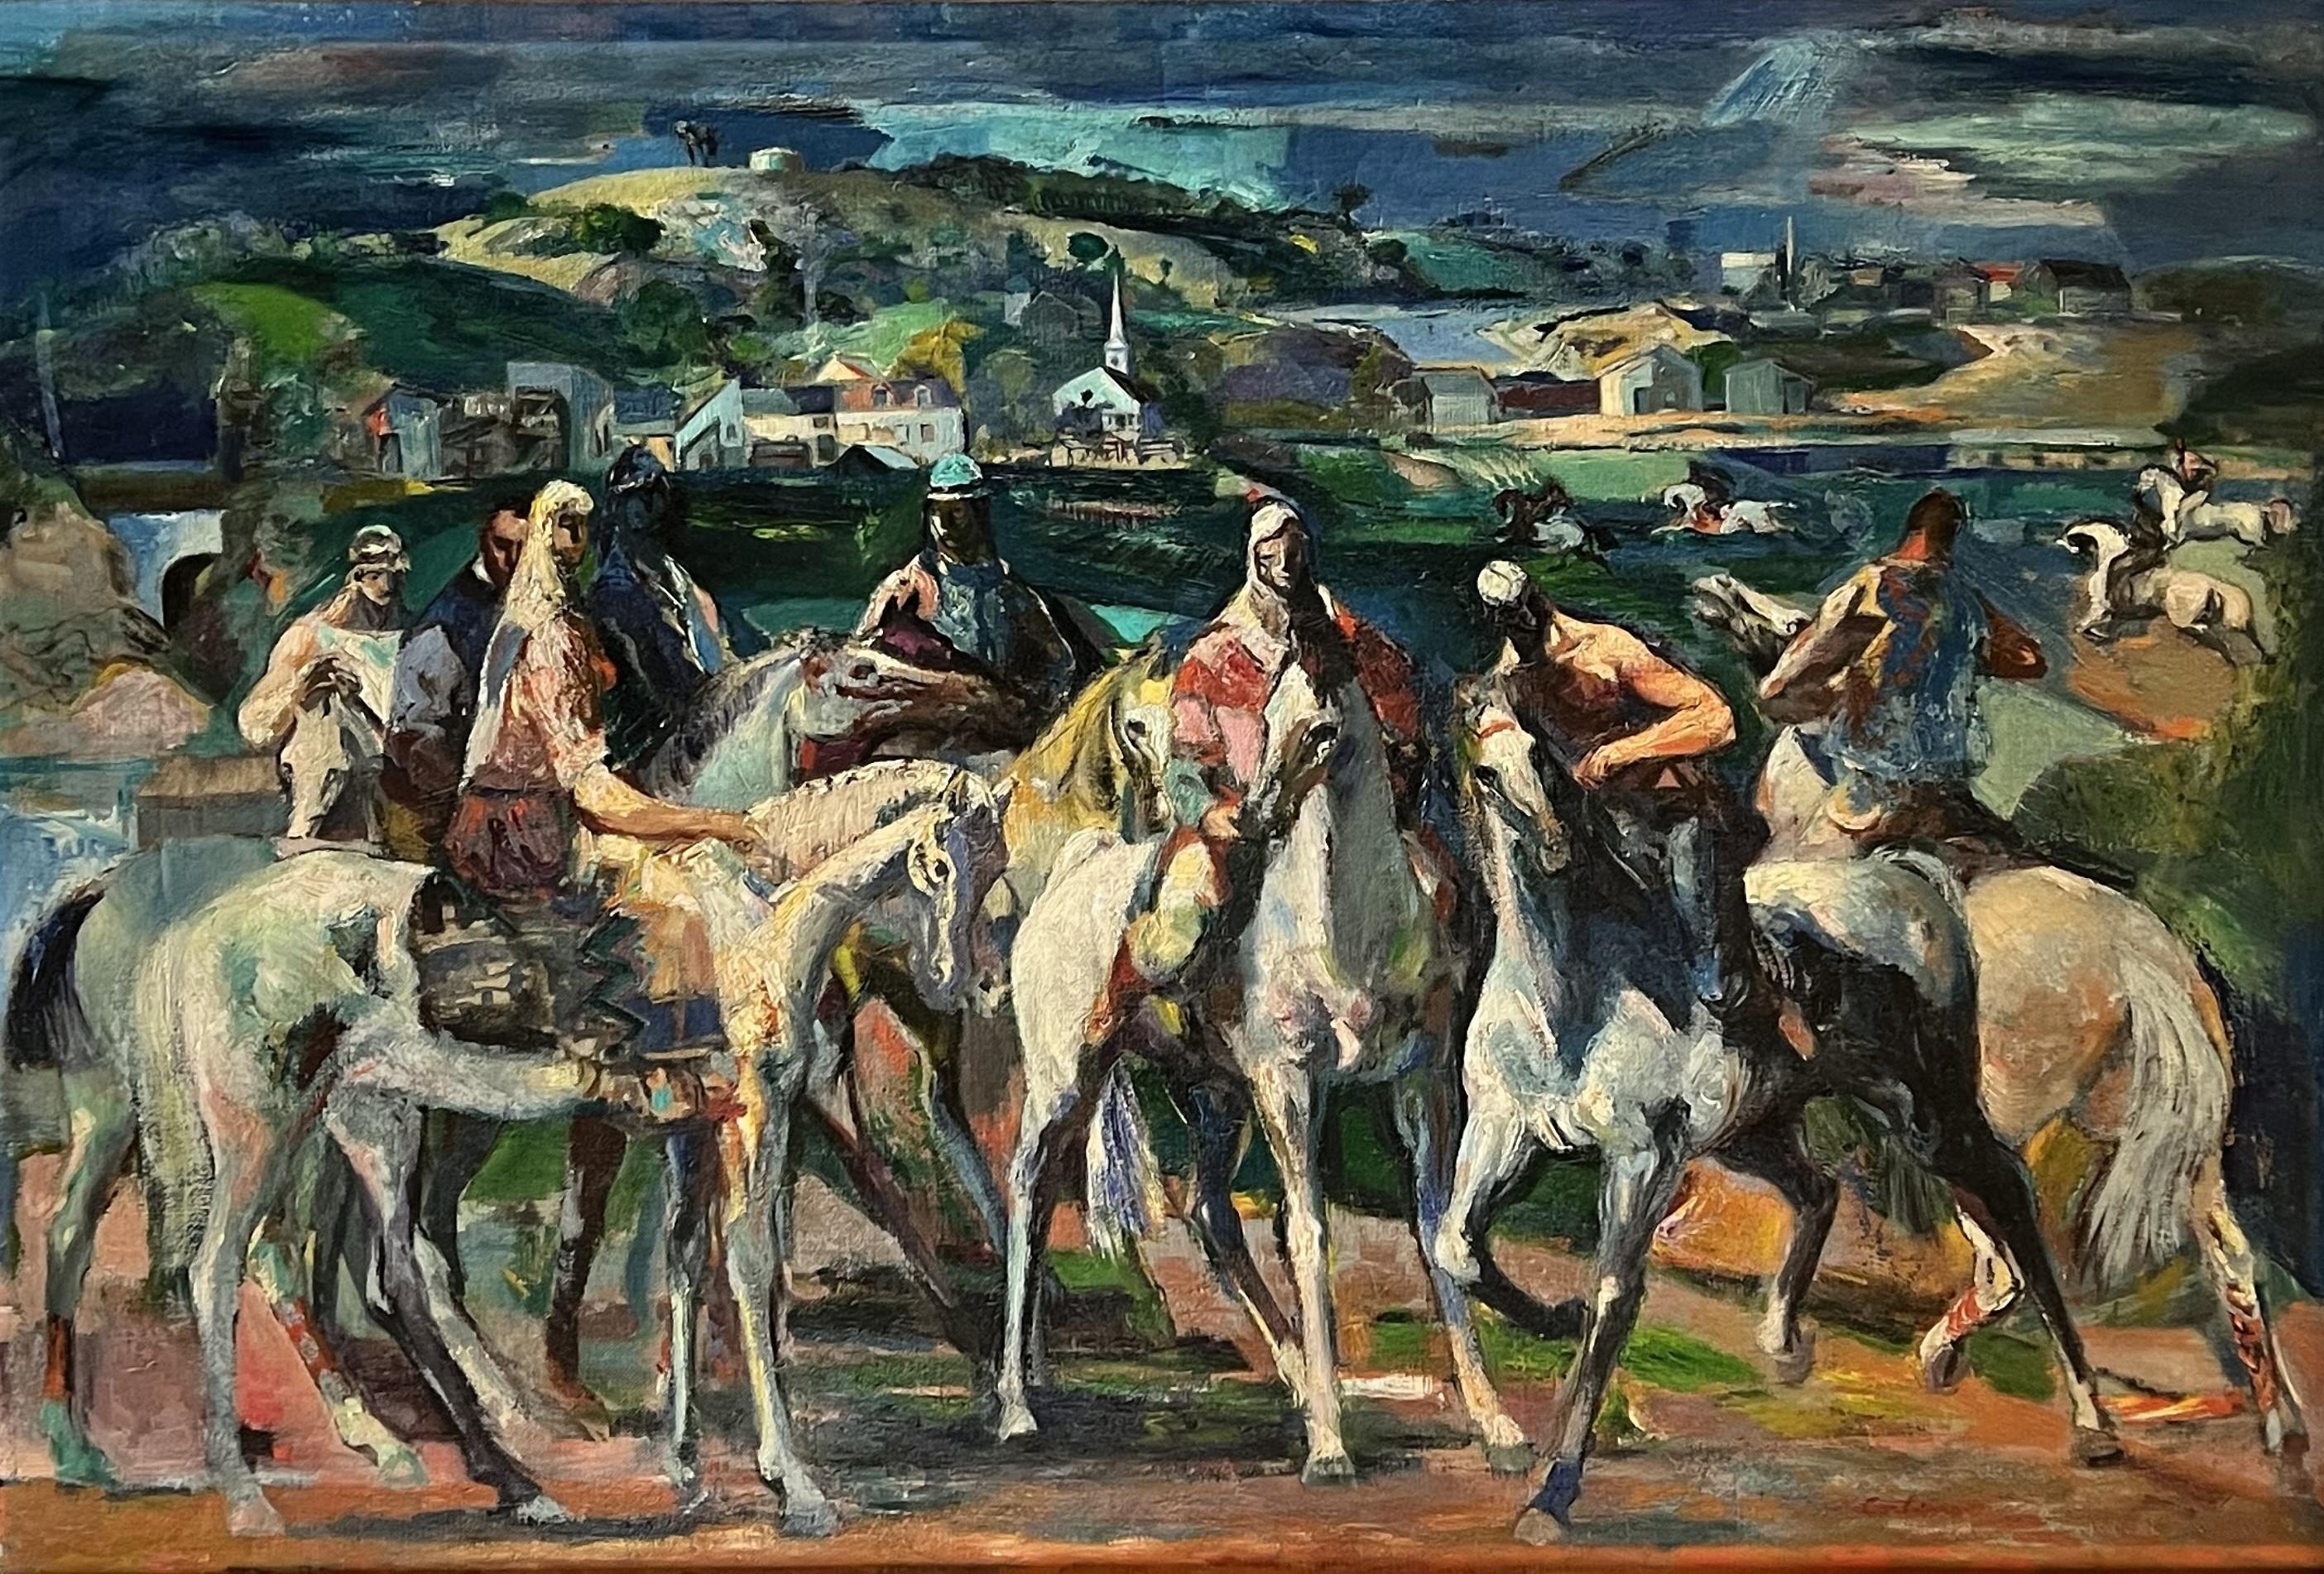 Die Reiter von Pigeon Hill  – Painting von Jon Corbino